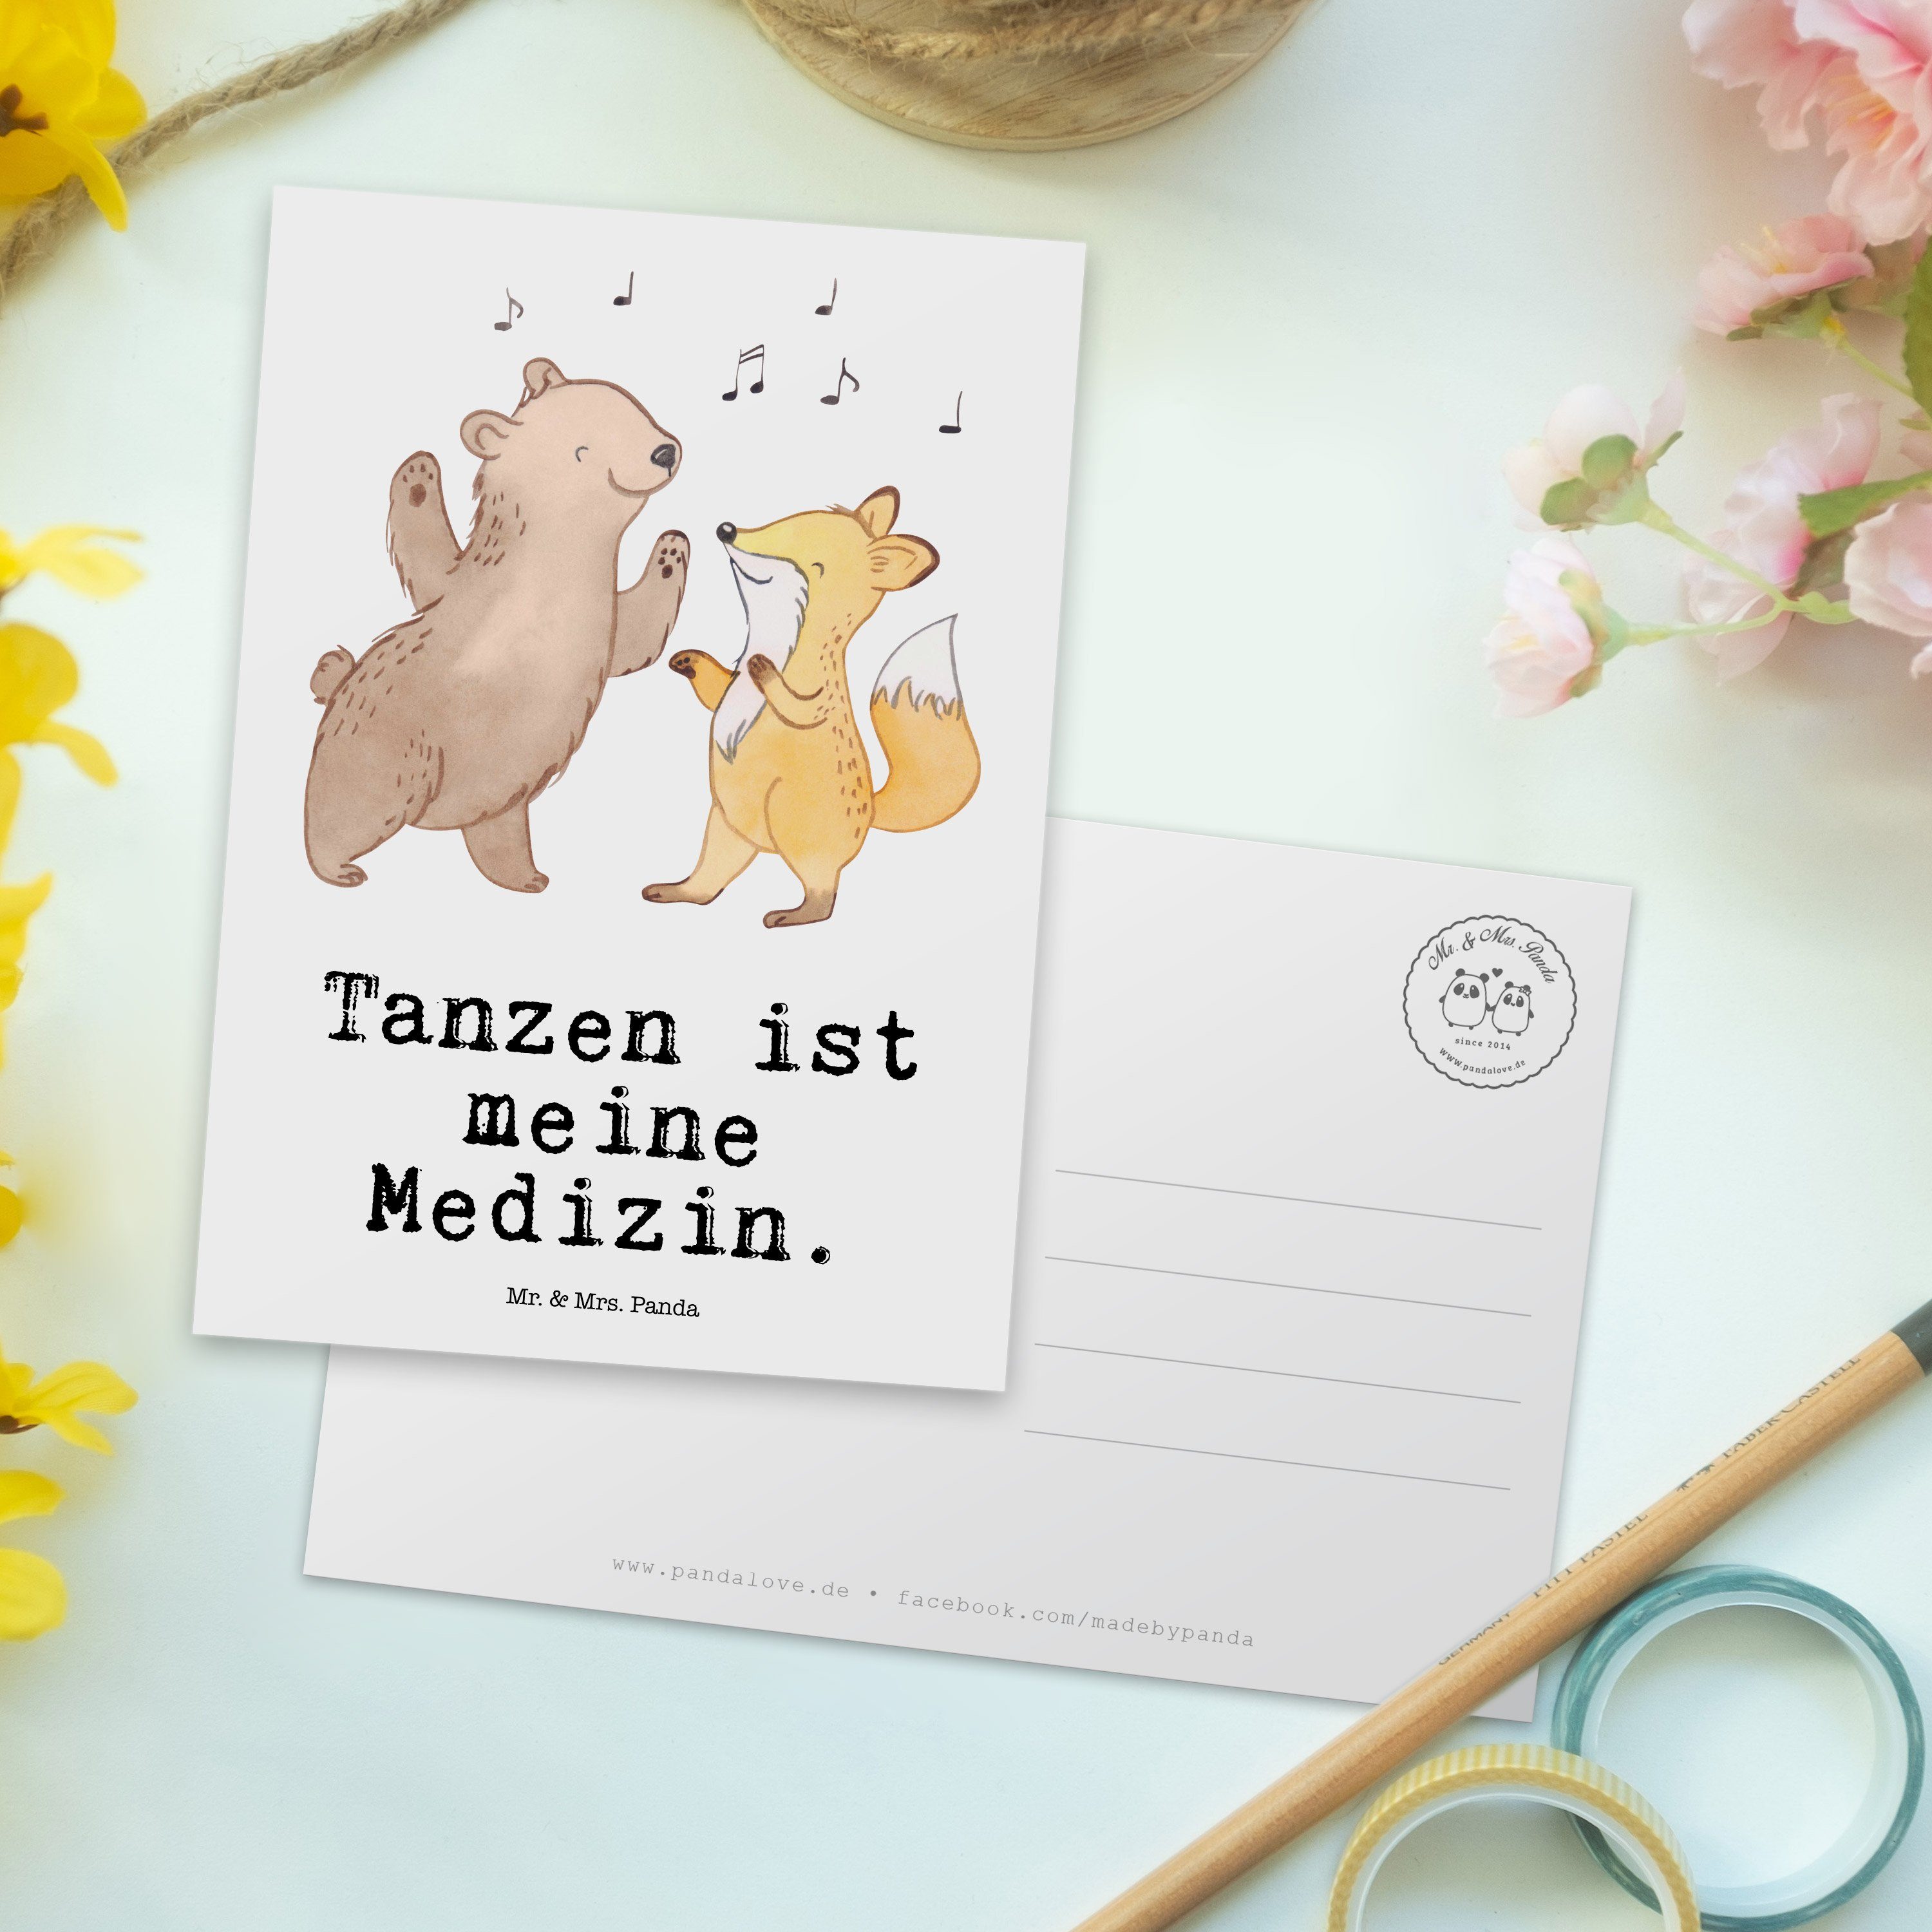 Mr. & Mrs. Panda - Weiß Medizin Einl Grußkarte, Hase Postkarte Ansichtskarte, - Tanzen Geschenk